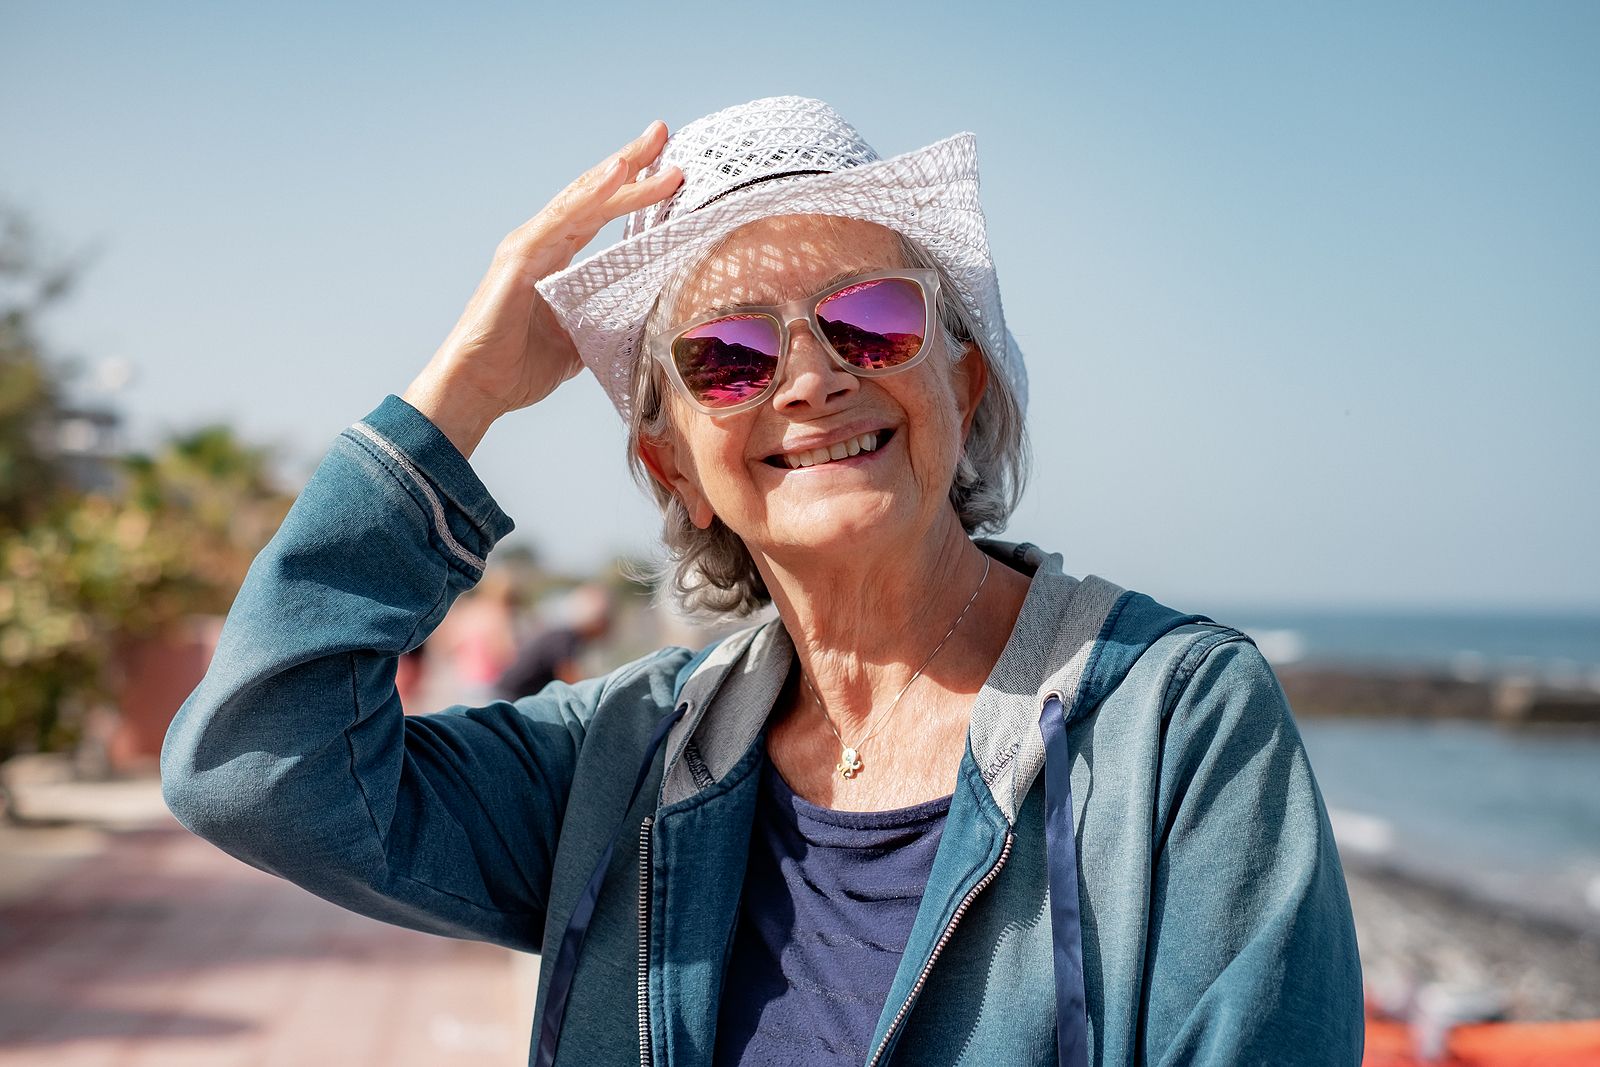 Oftalmólogos alertan de problemas oculares por sobreexposición al sol, agua salada y calor